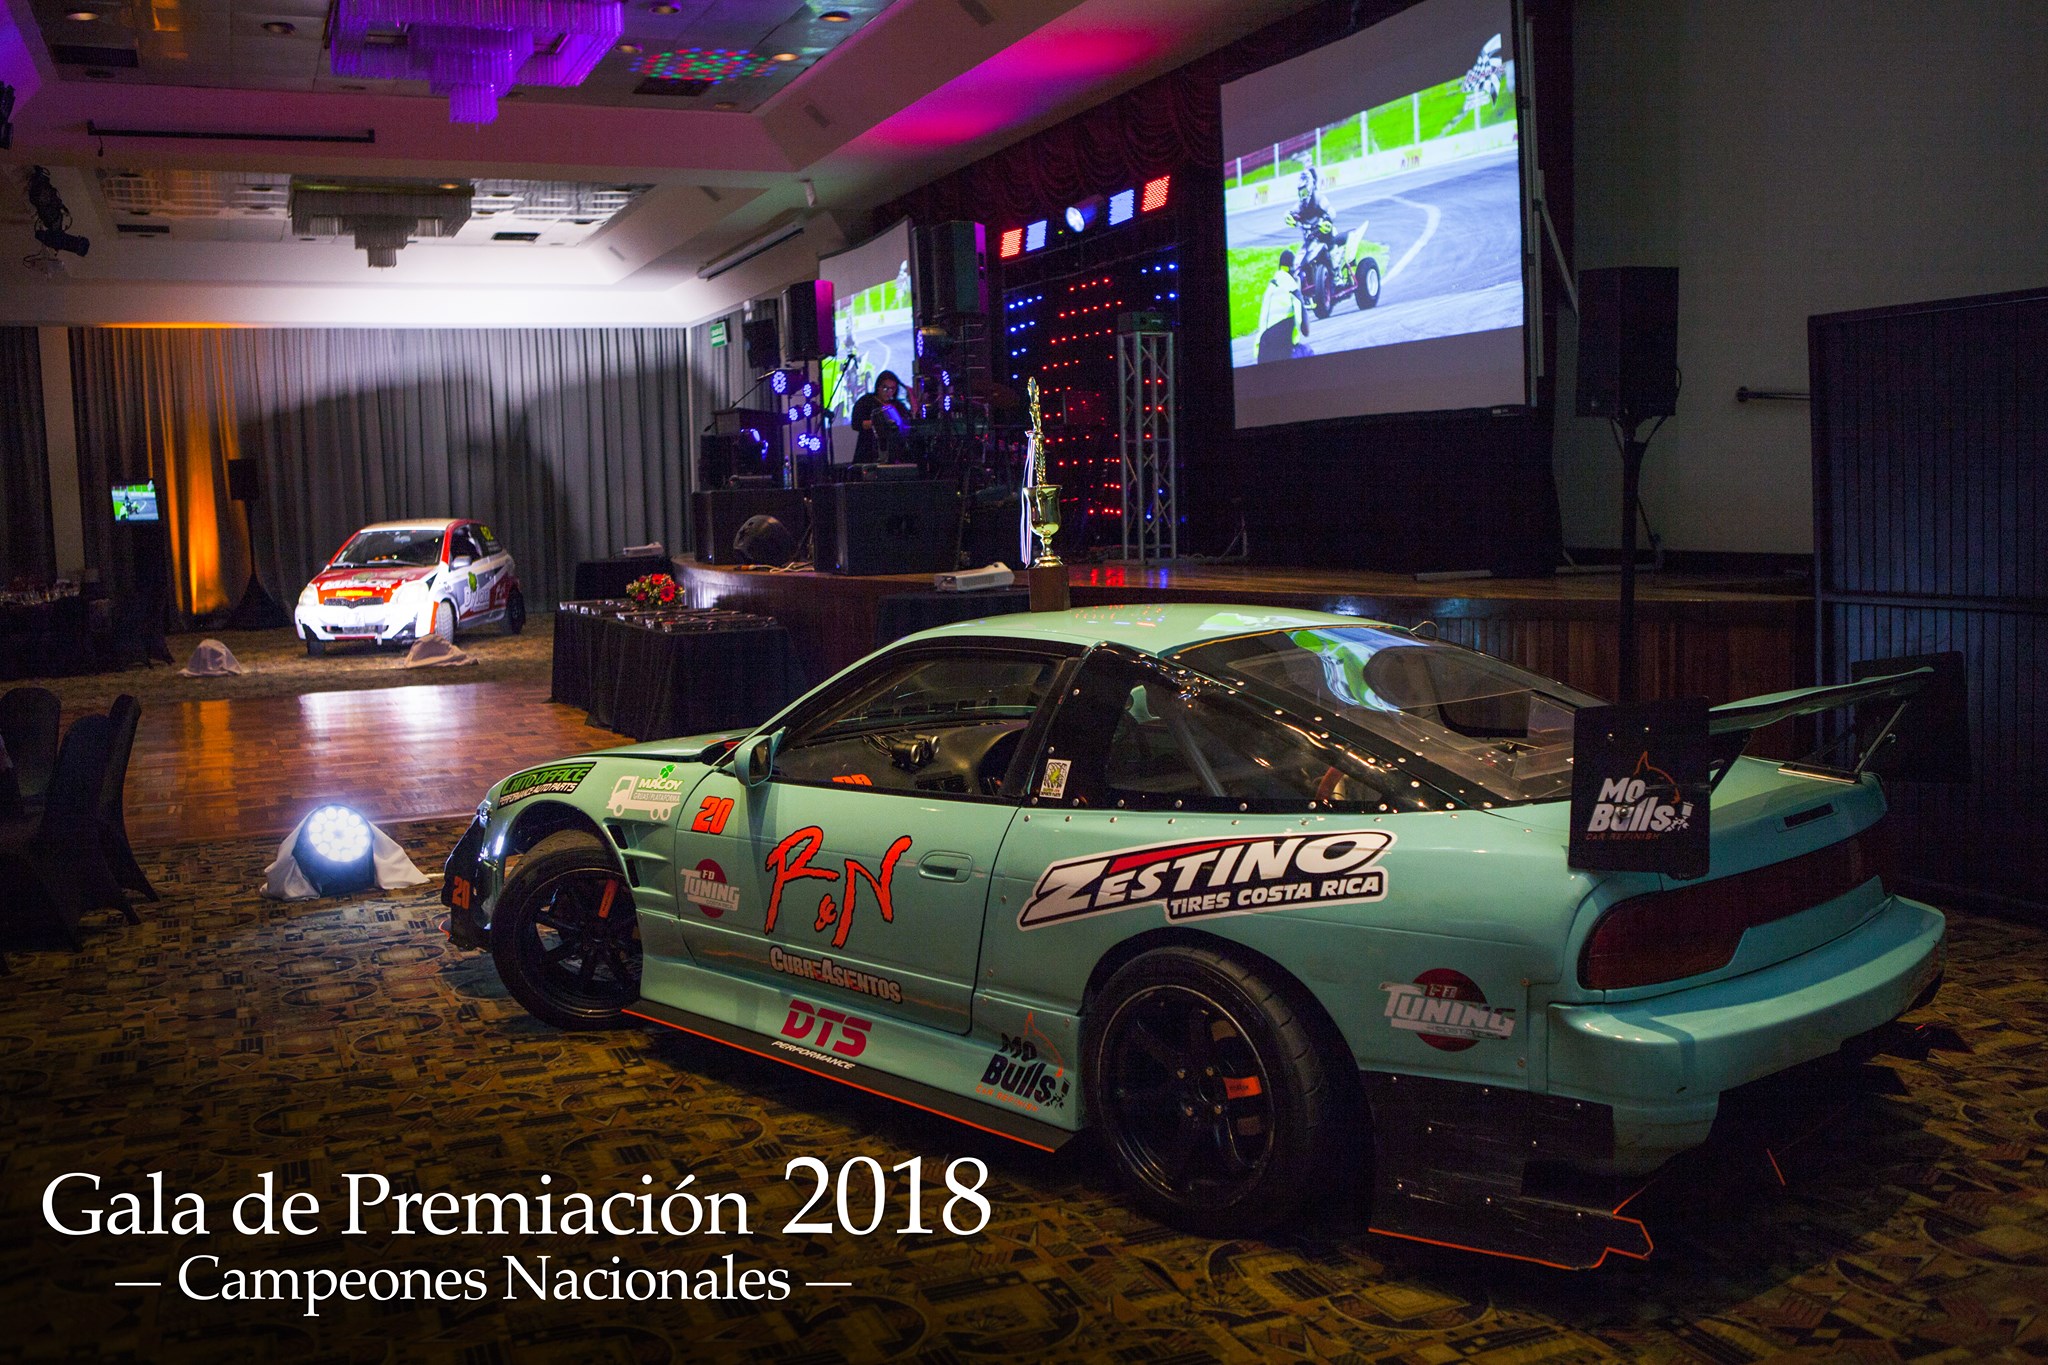 Gala - Premiación Campeones Nacionales 2018